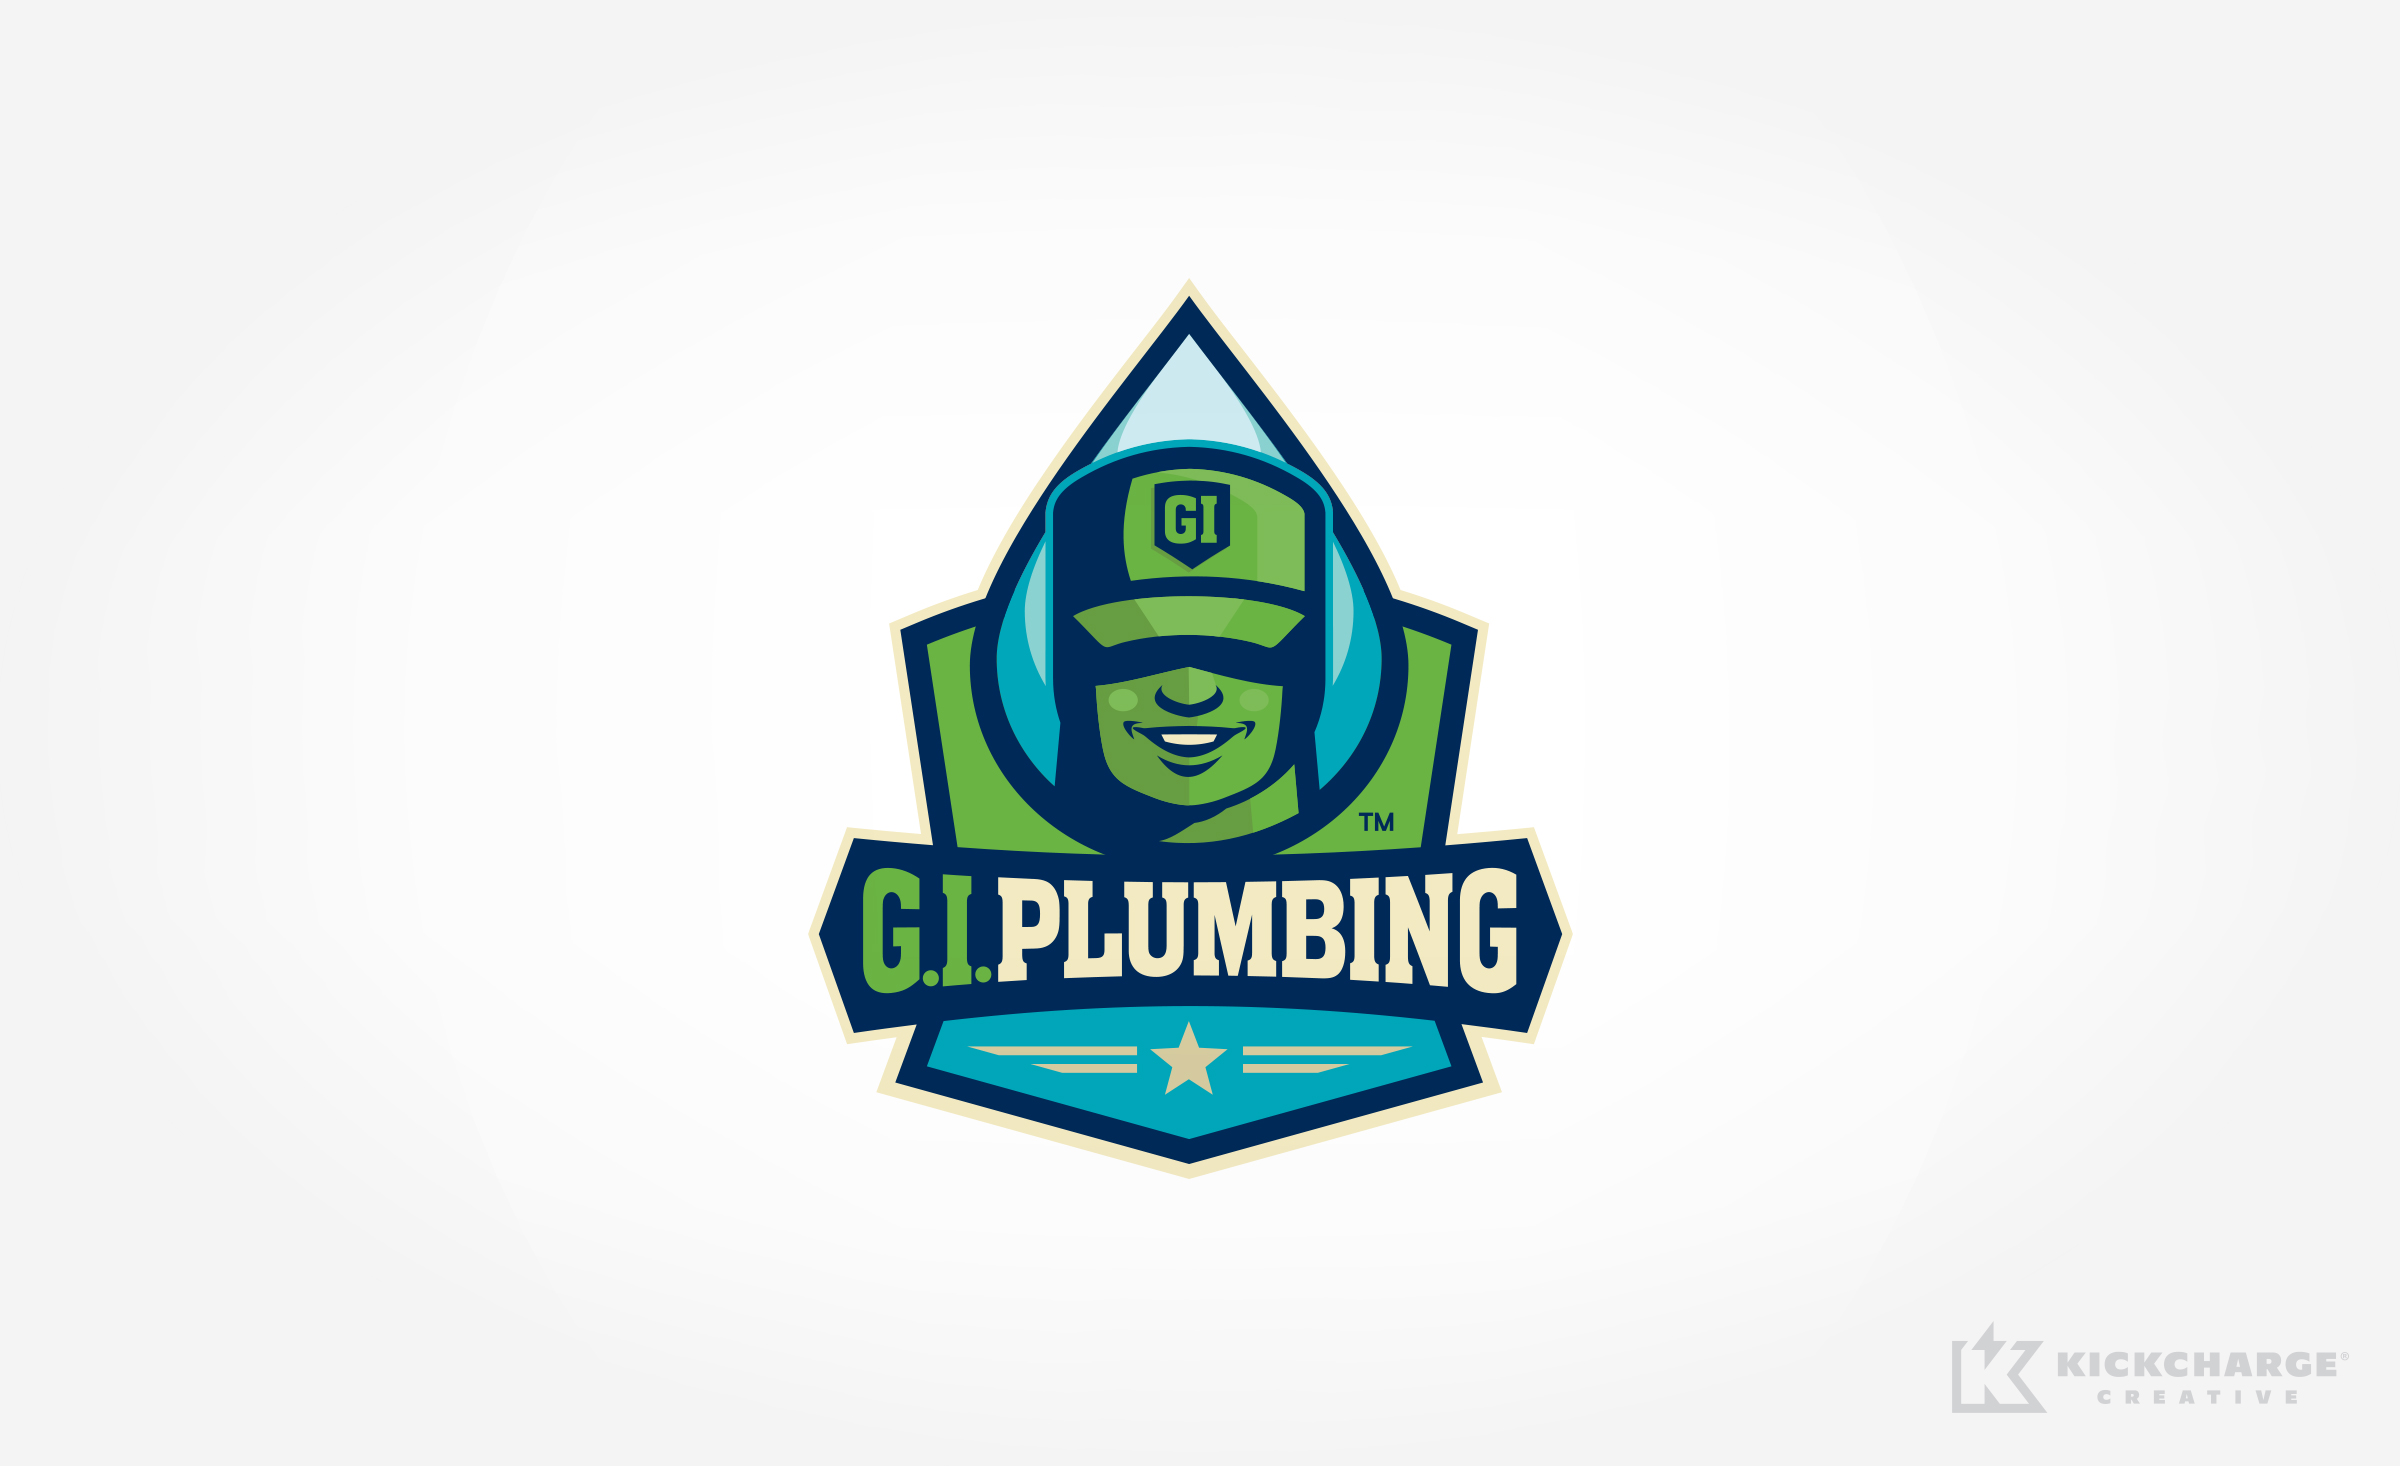 plumbing logo for G.I. Plumbing